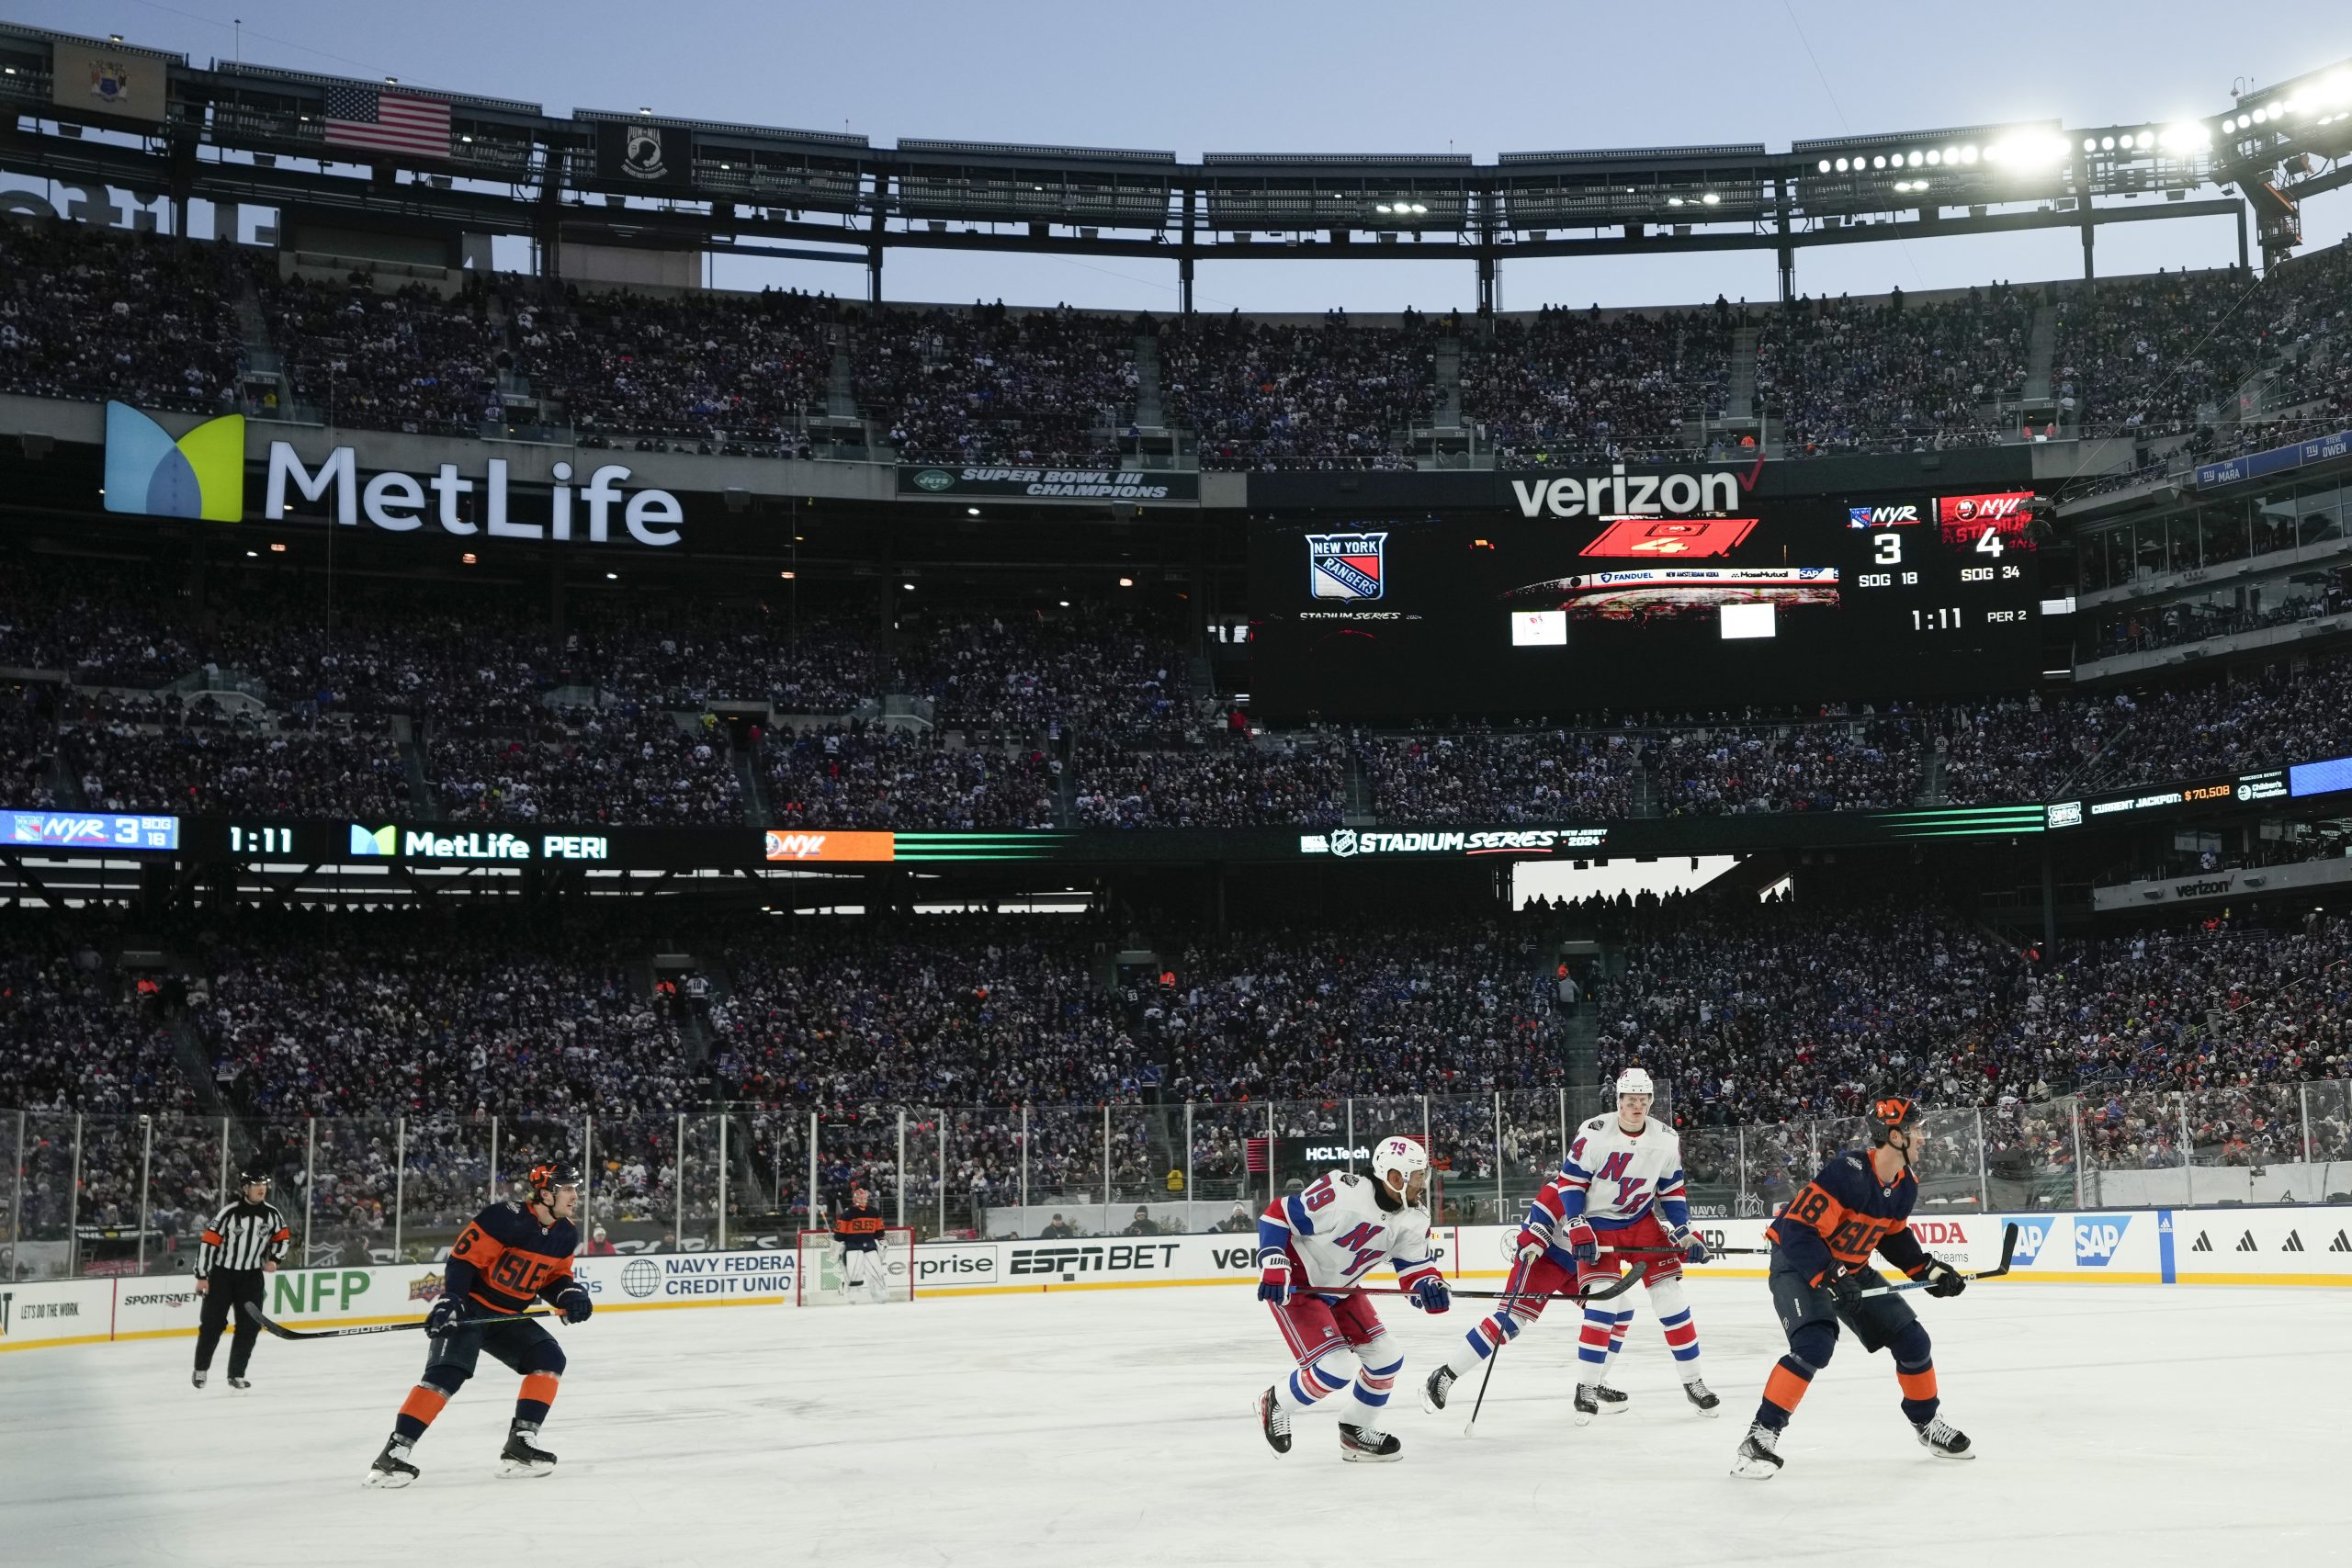 Eishockey im Met Life Football Stadion vor 70.000 Leuten – NY Rangers gewinnen gegen Lokalrivalen NY Islanders 6:5 in außergewöhnlichem Spiel